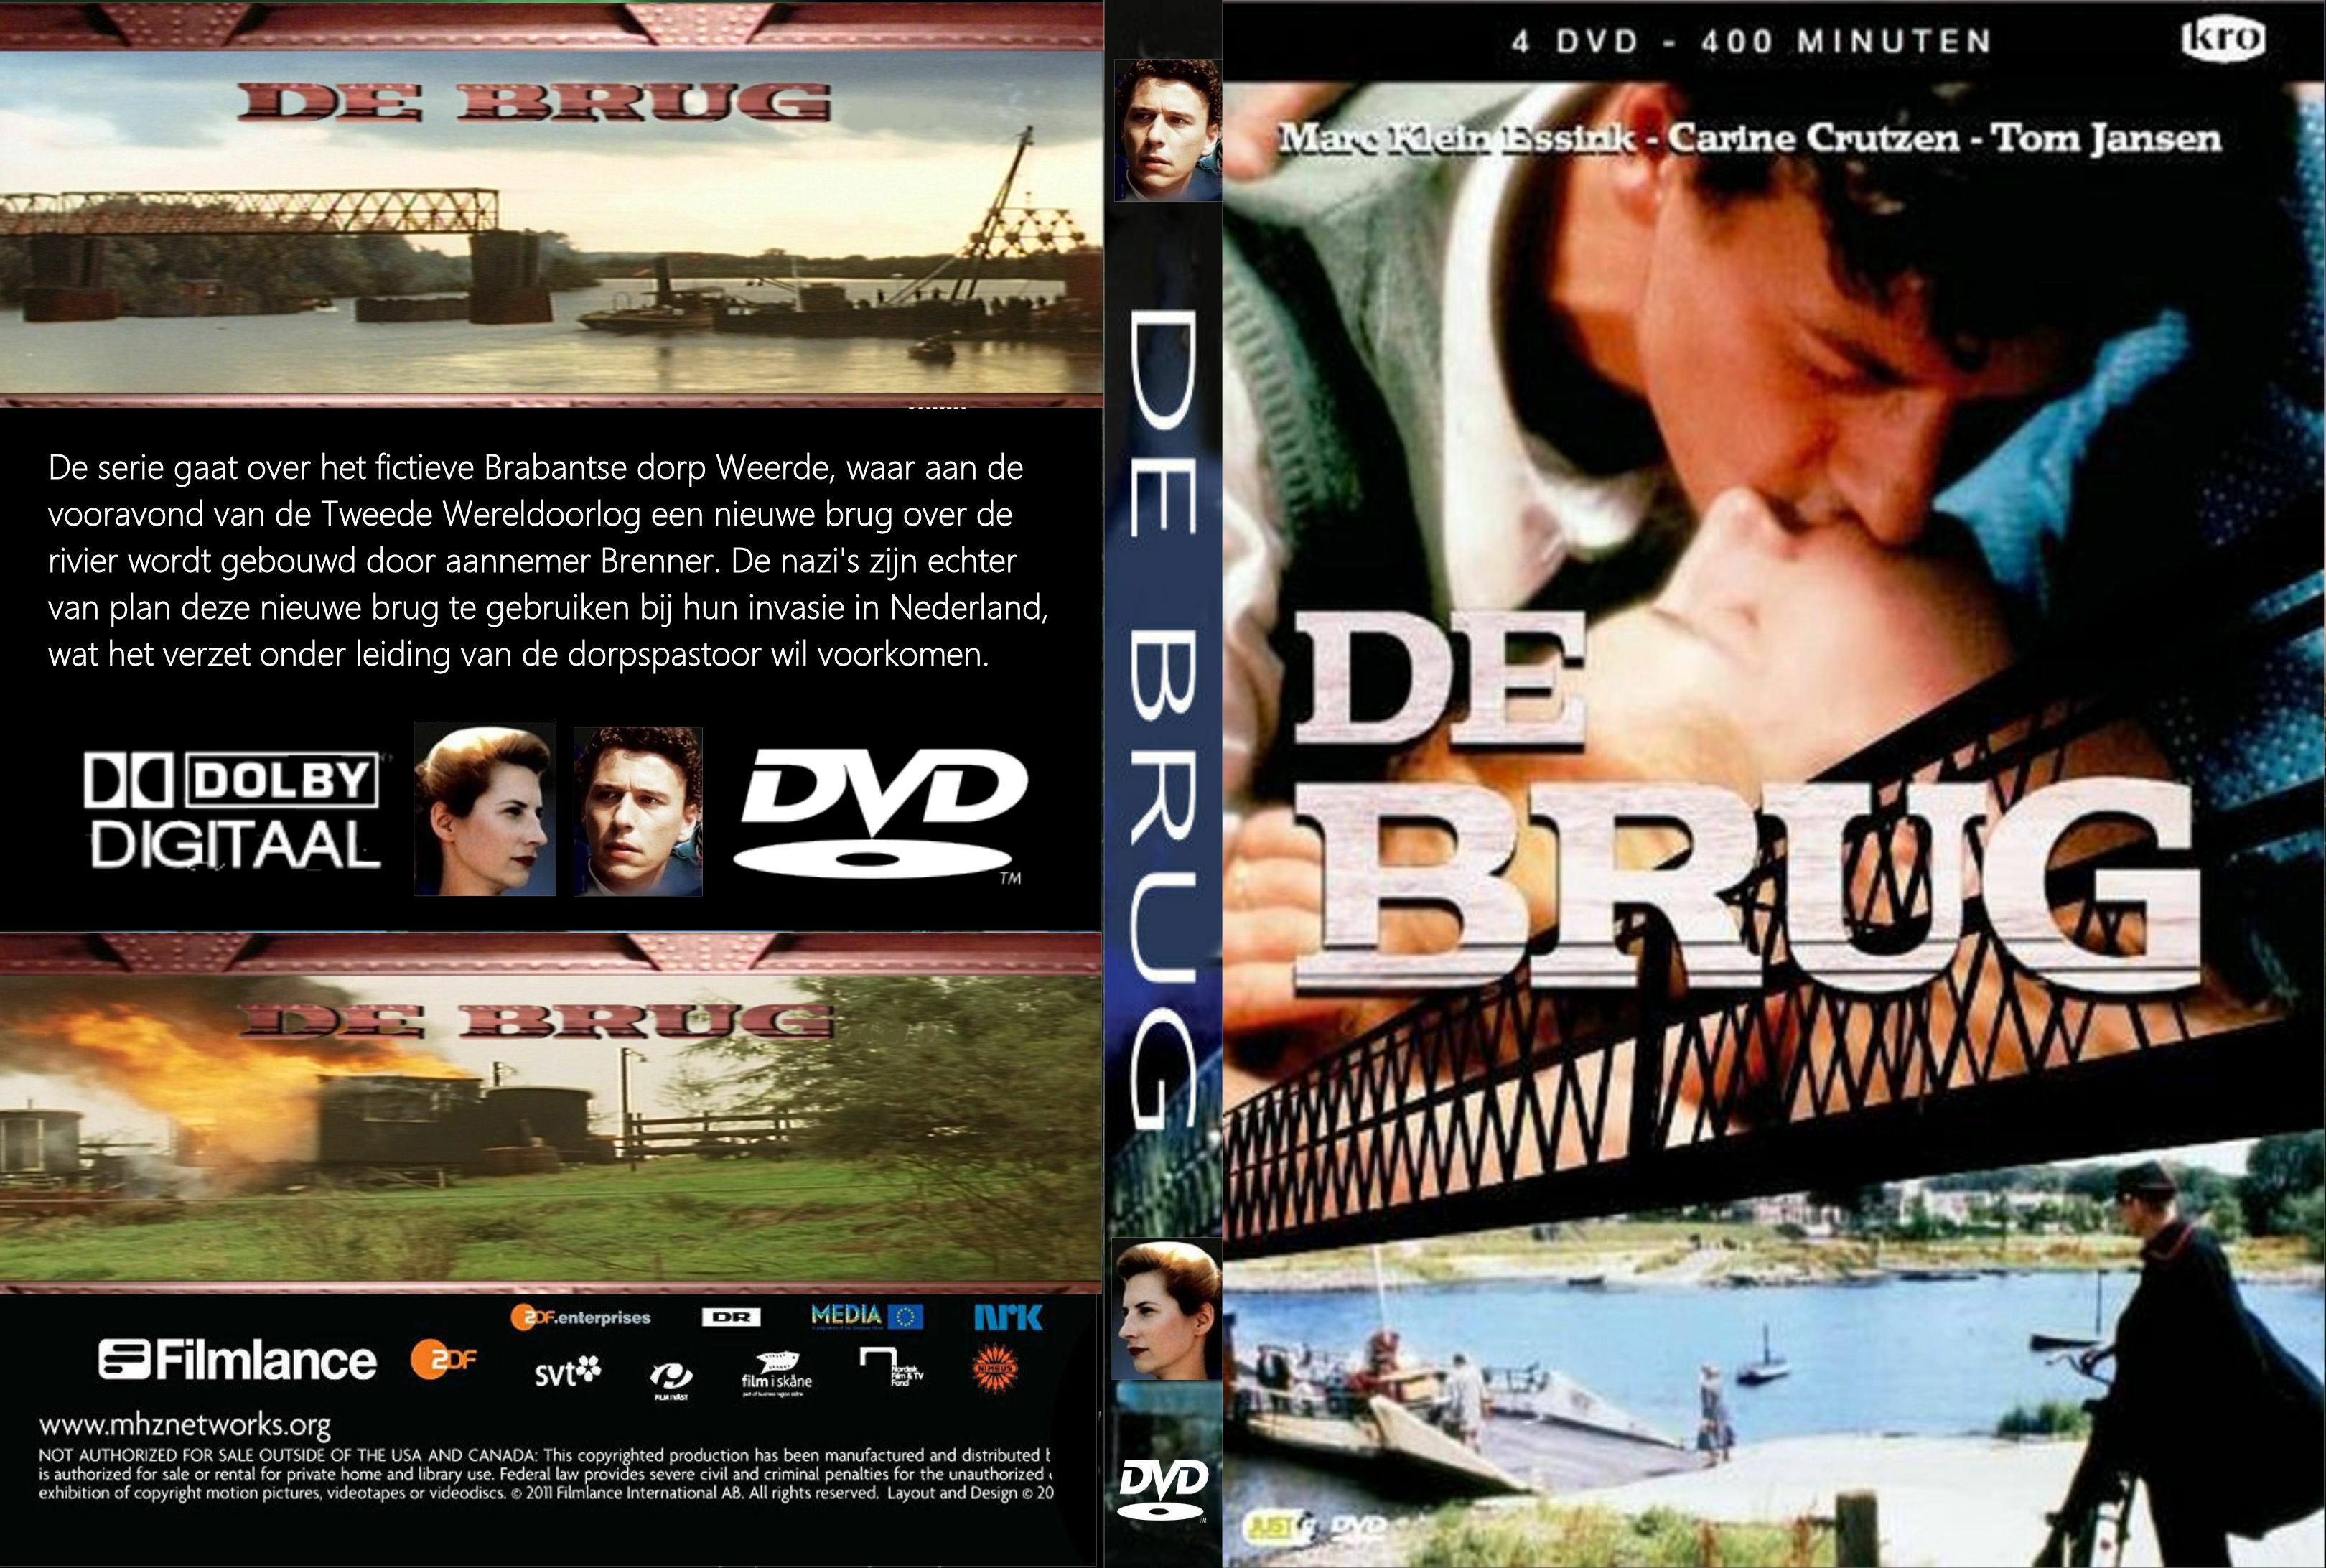 De Brug (1990) DvD 4 Finalee